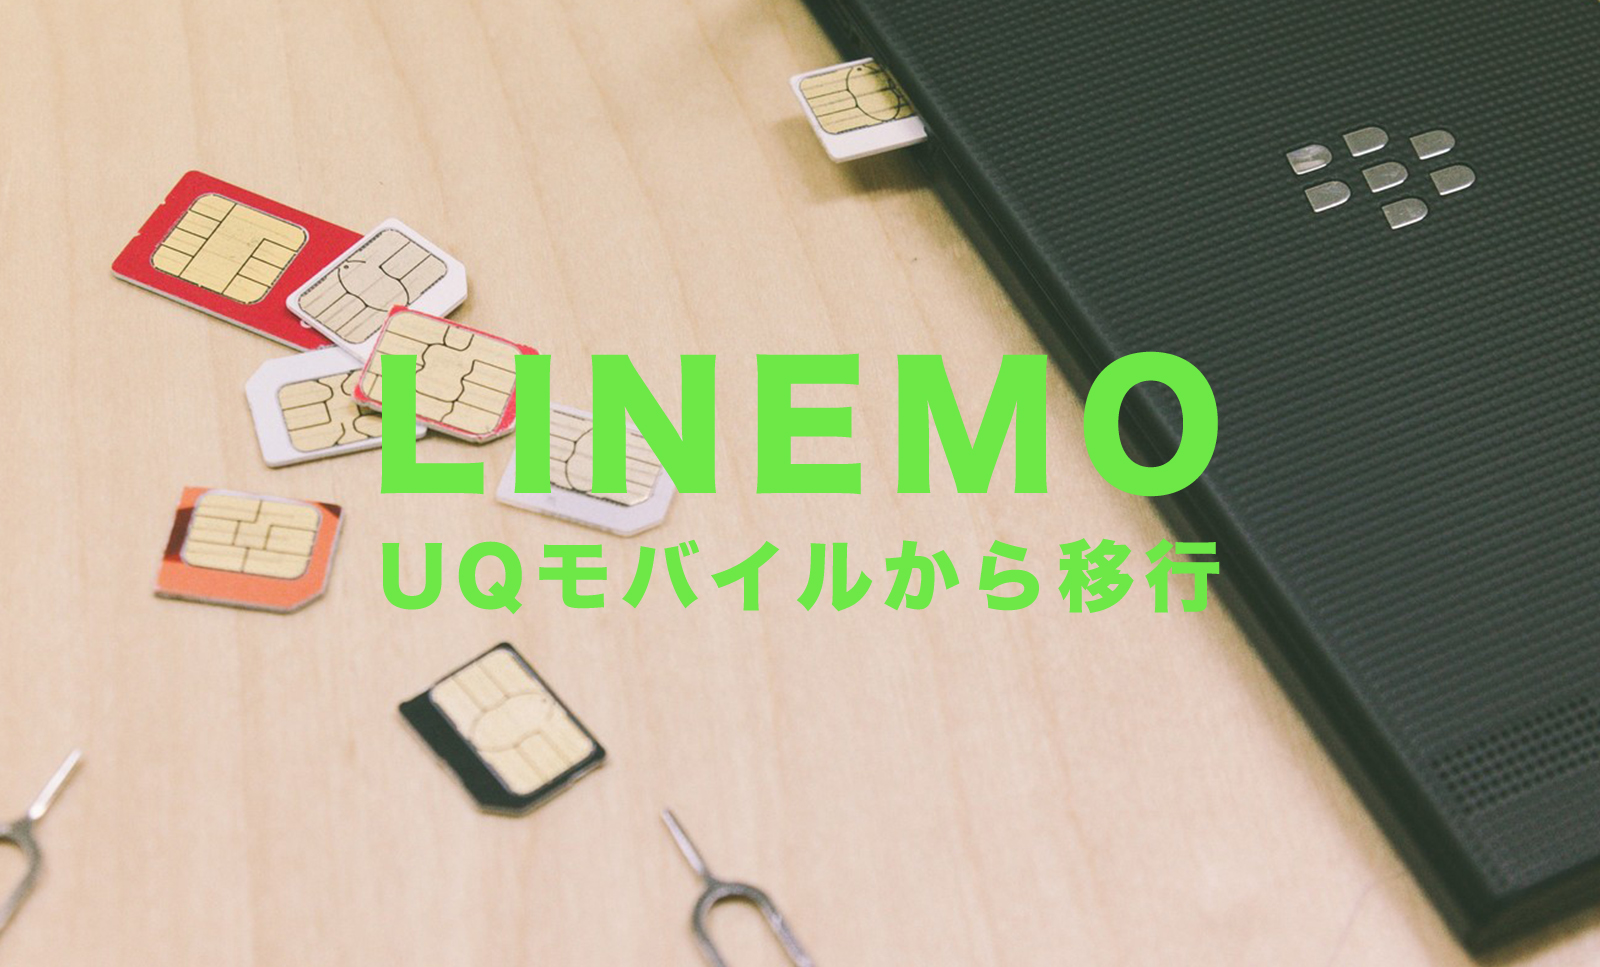 UQモバイルからLINEMO(ラインモ)へ乗り換えする手順&方法を解説のサムネイル画像